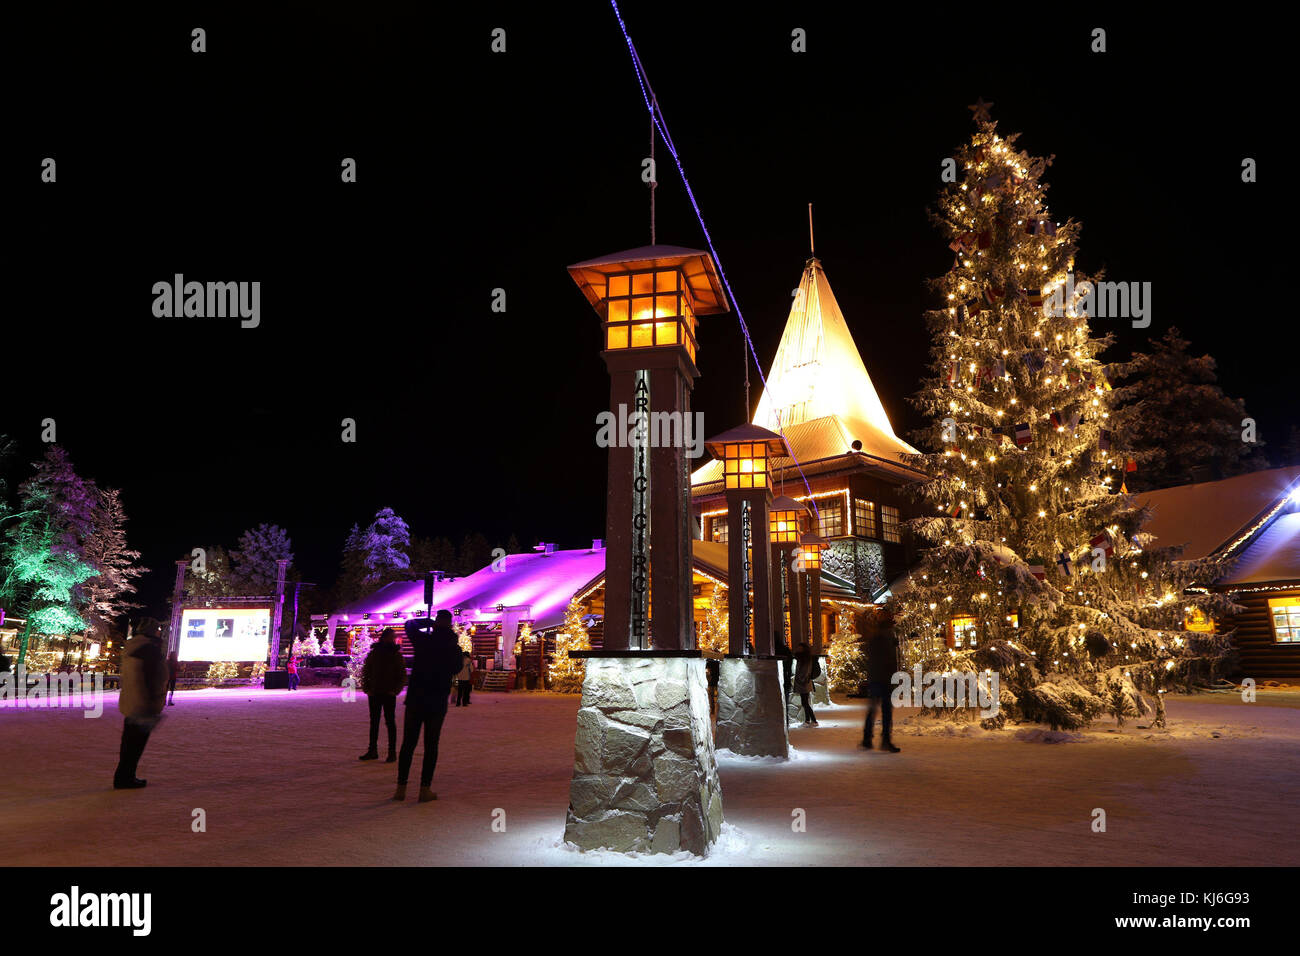 Una vista de la villa de Santa Claus en Rovaniemi, Finlandia. Rovaniemi es la capital de la provincia de Laponia finlandesa y está situado en el Círculo Polar Ártico, es también la ciudad natal oficial de Papá Noel. Foto de stock